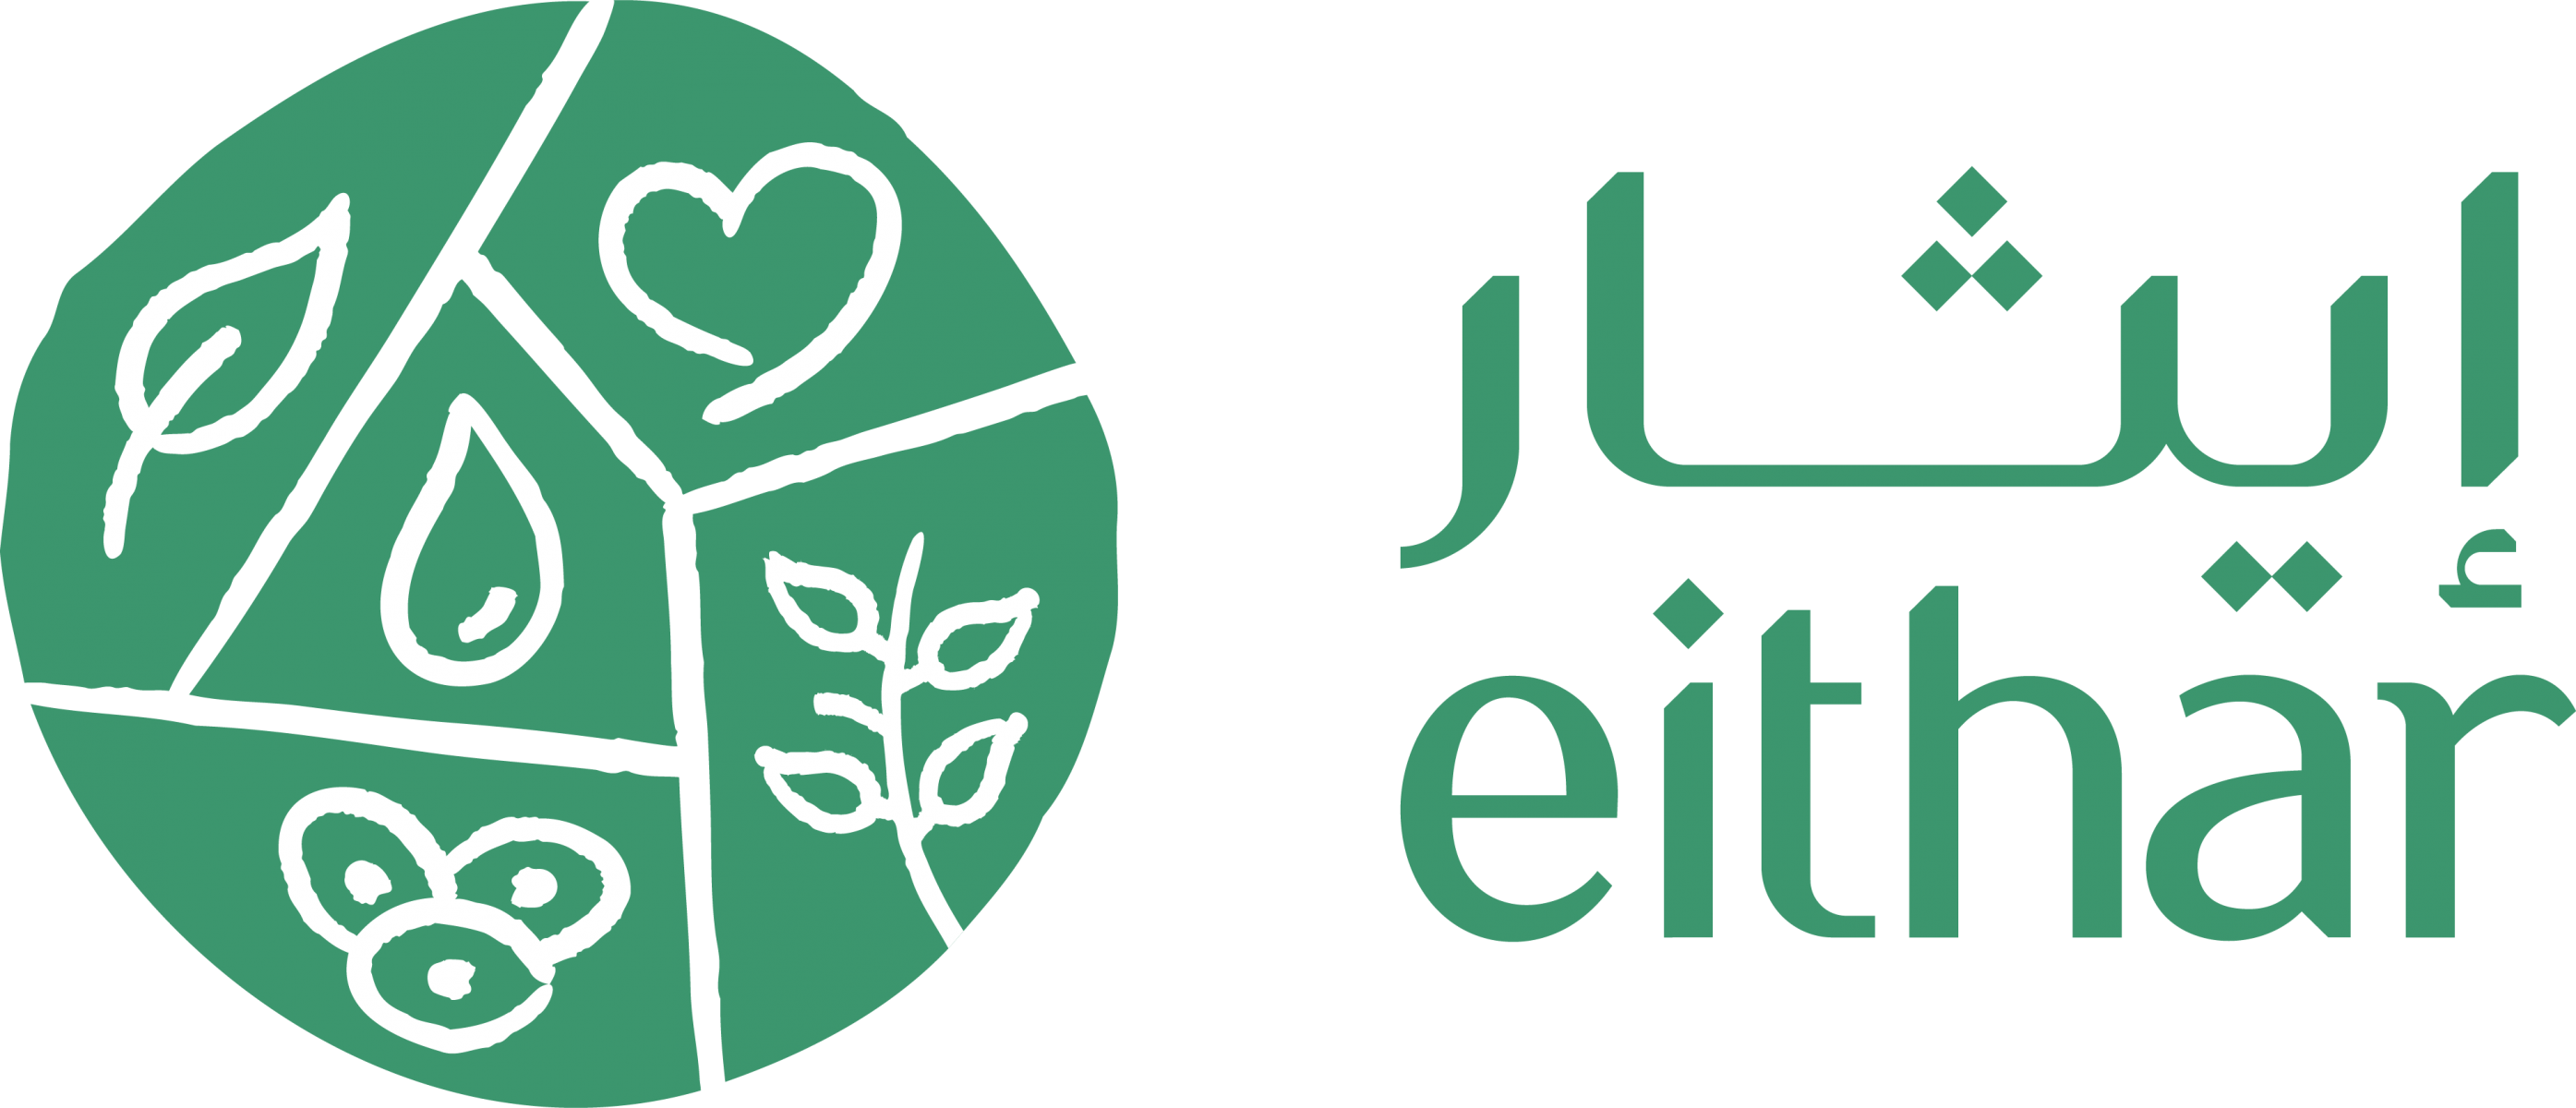 الجمعية الخيرية السعودية لتنشيط التبرع بالأعضاء بالمنطقة الشرقية (إيثار)